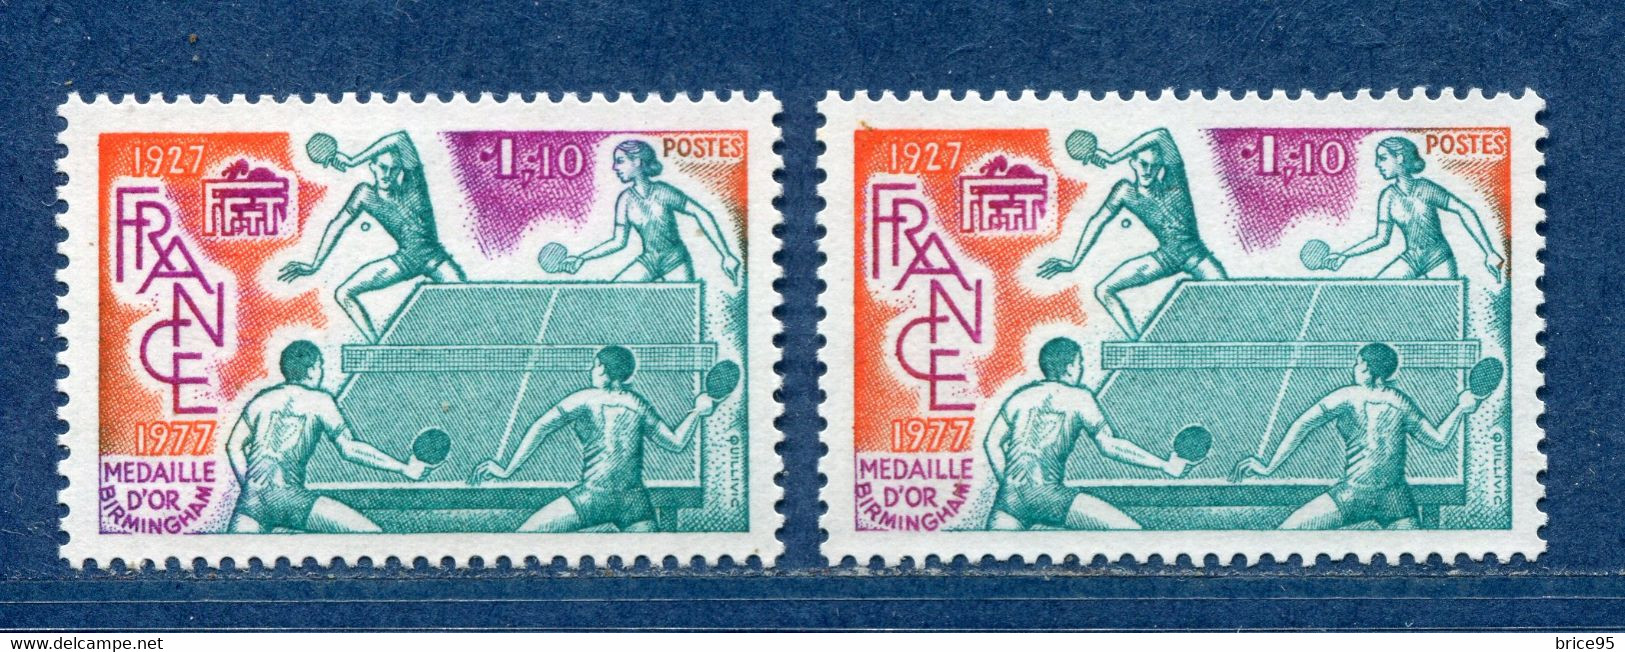 ⭐ France - Variété - YT N° 1961 - Couleurs - Pétouille - Neuf Sans Charnière - 1977 ⭐ - Nuevos